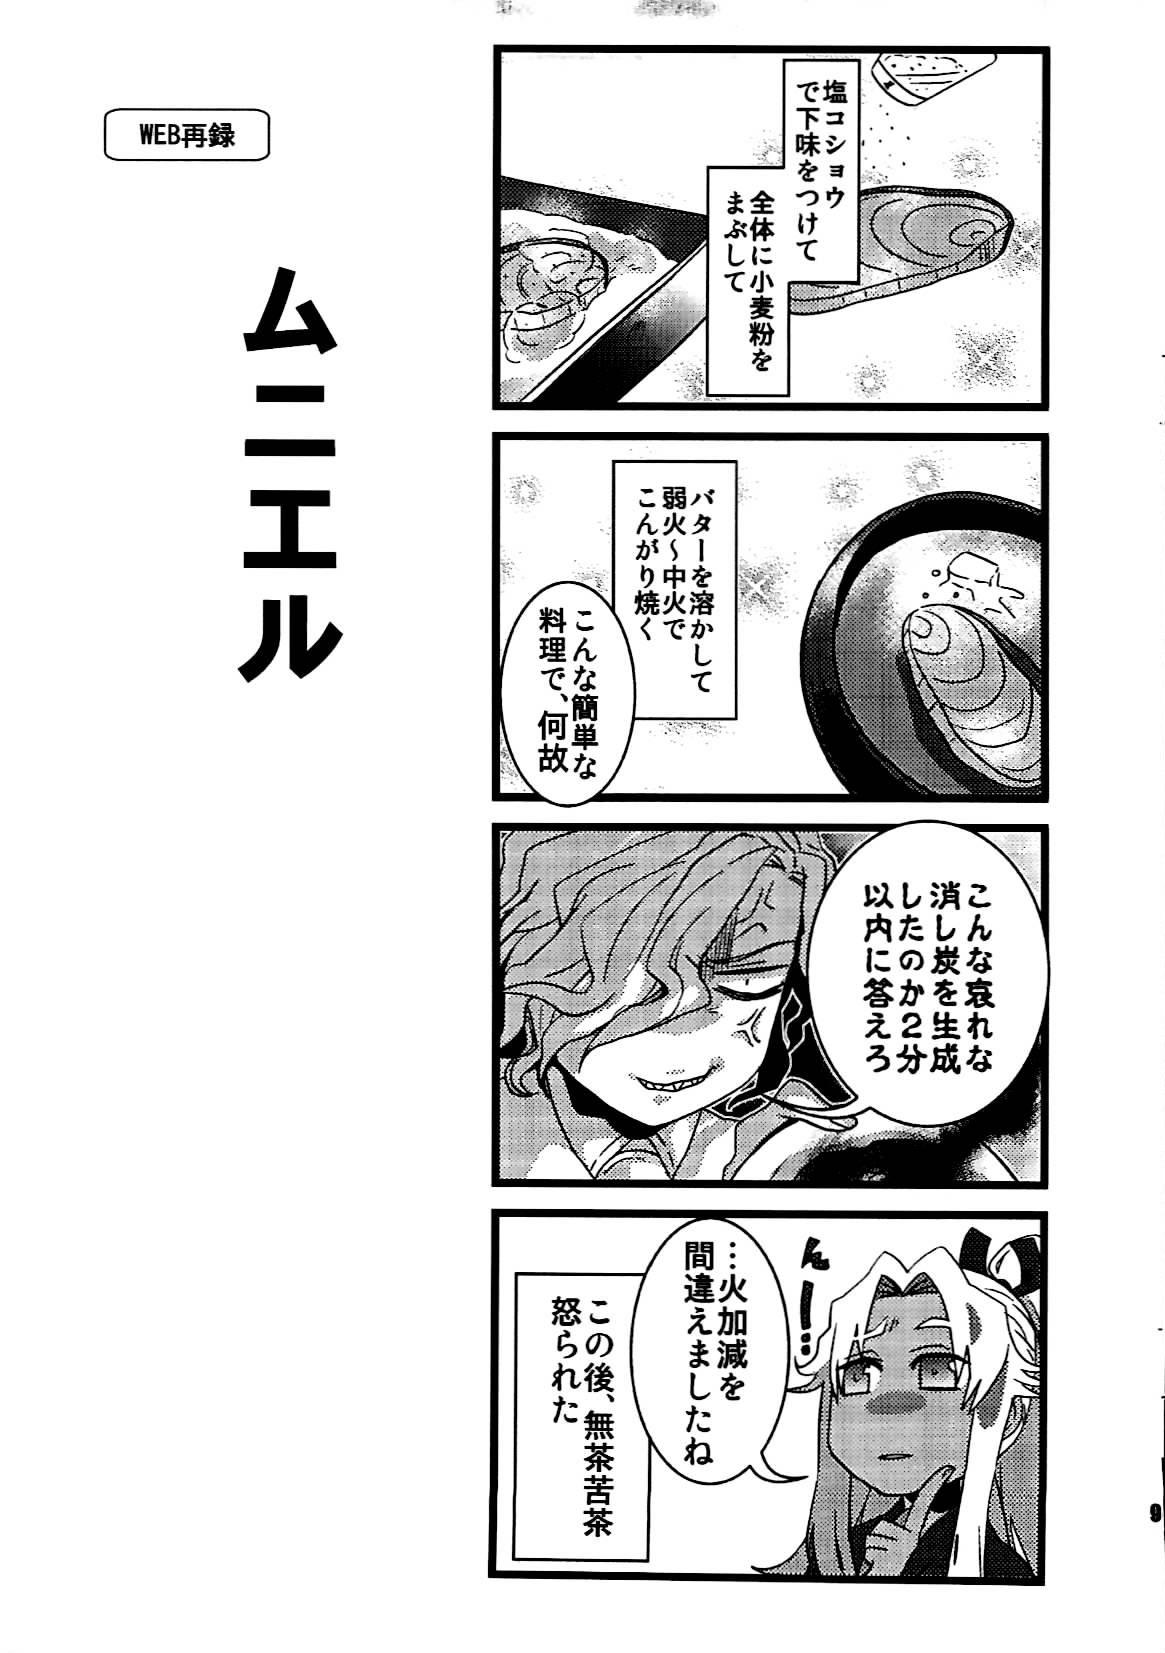 Stepdad +7 Edomon to Amakusa ga Fuyuki shi de 7sai no Shirou to ittusyoni - Fate grand order Gay - Page 8